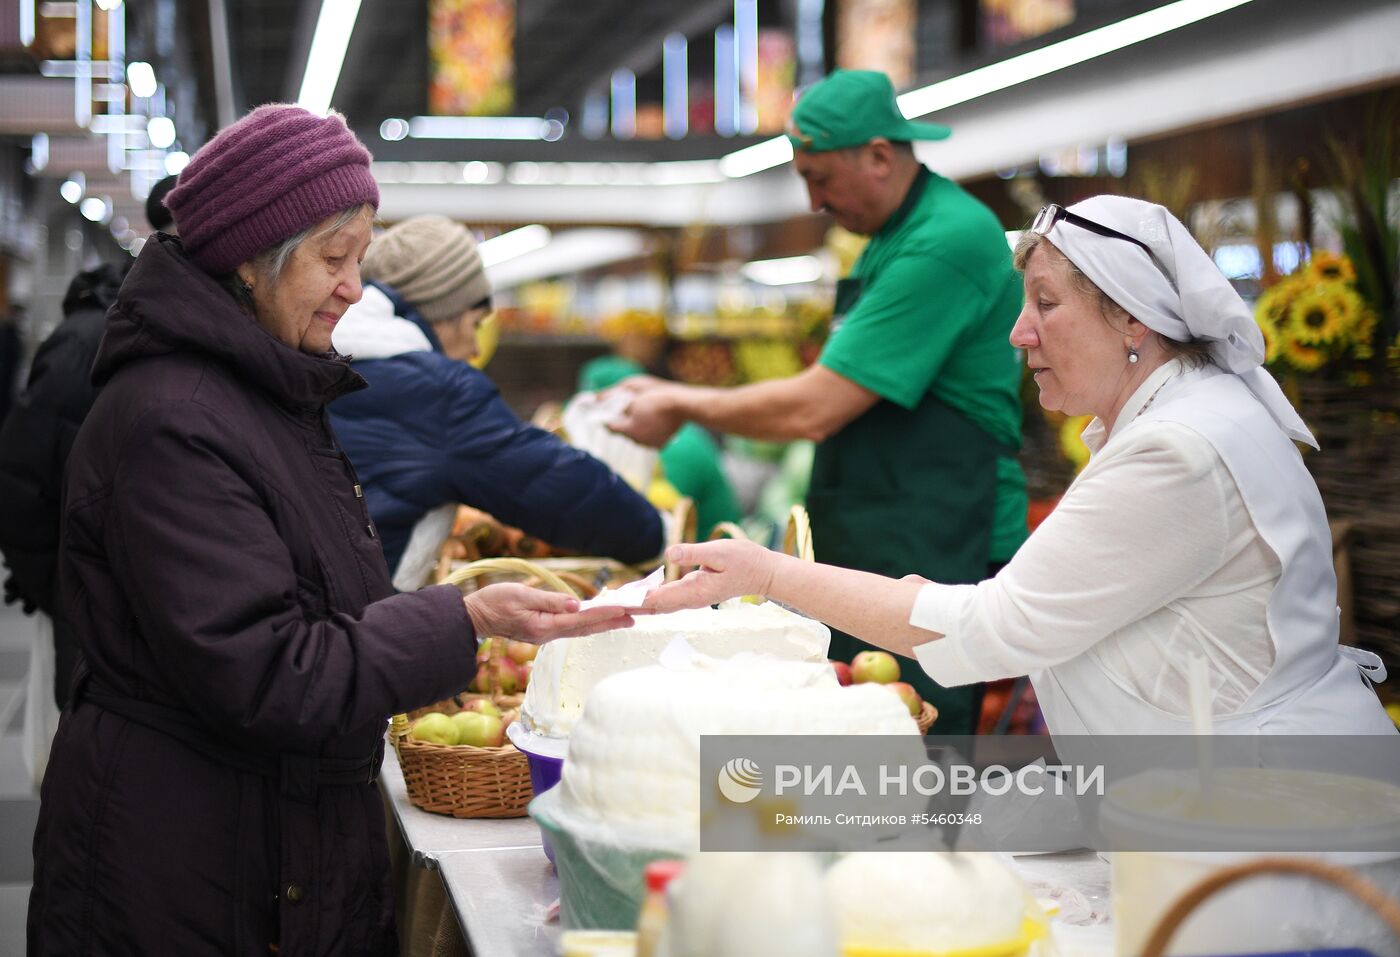 Открытие Велозаводского рынка в Москве после реконструкции